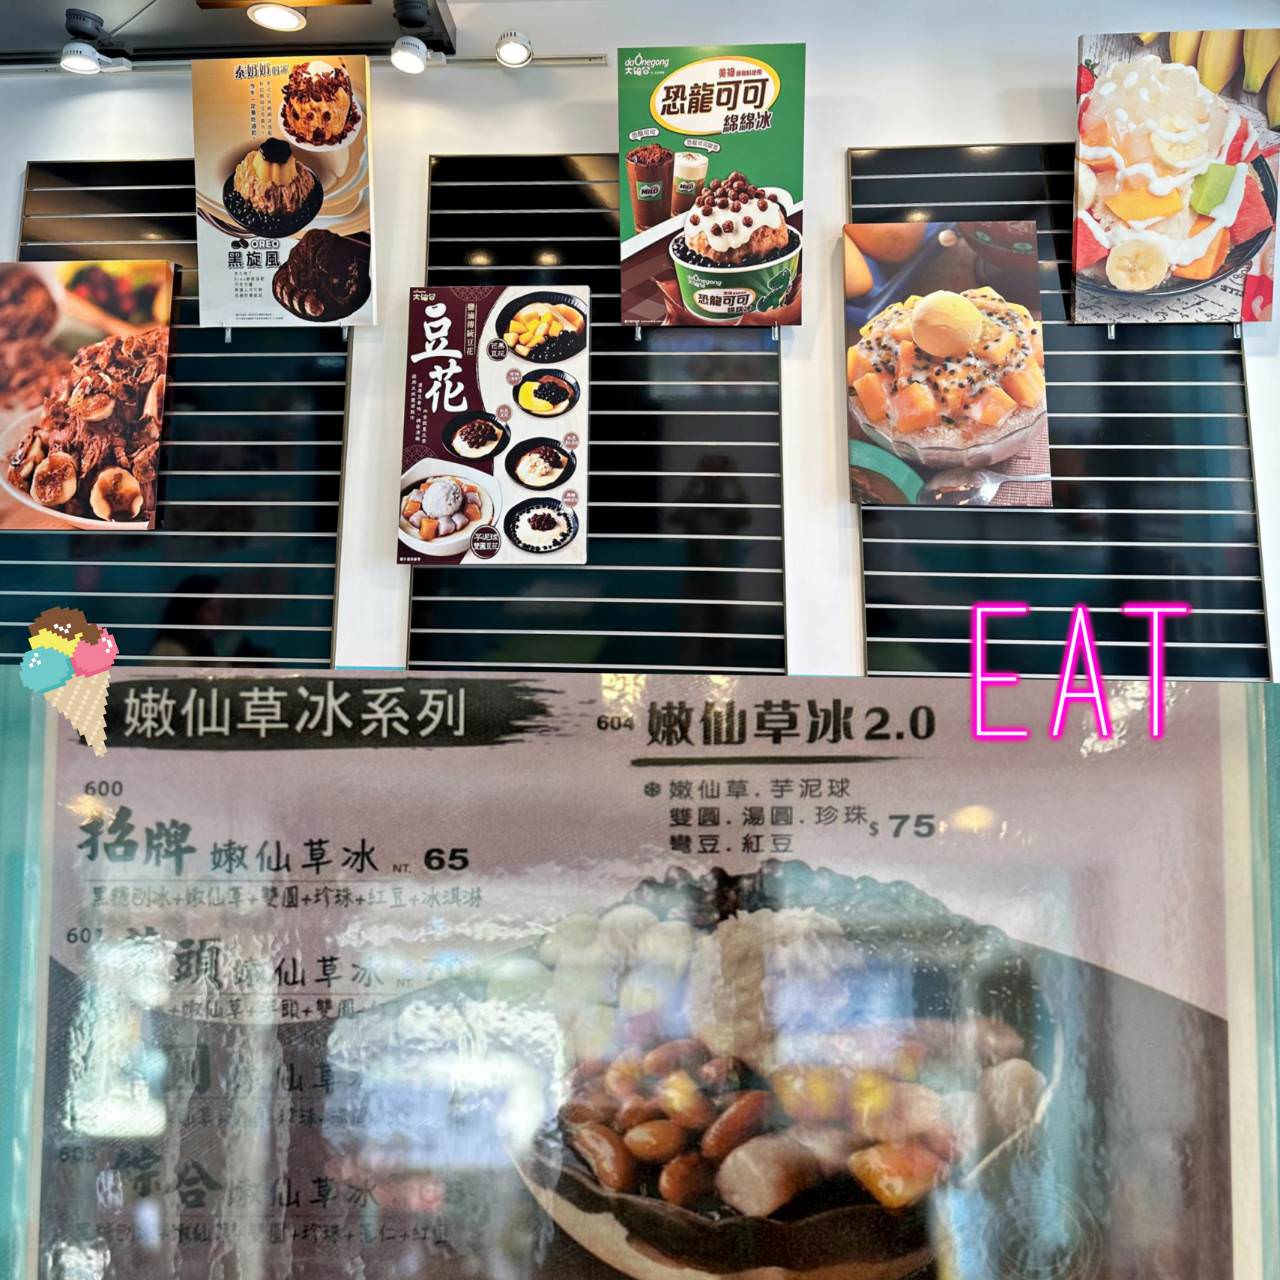 大碗公冰甜品 台南府前店25